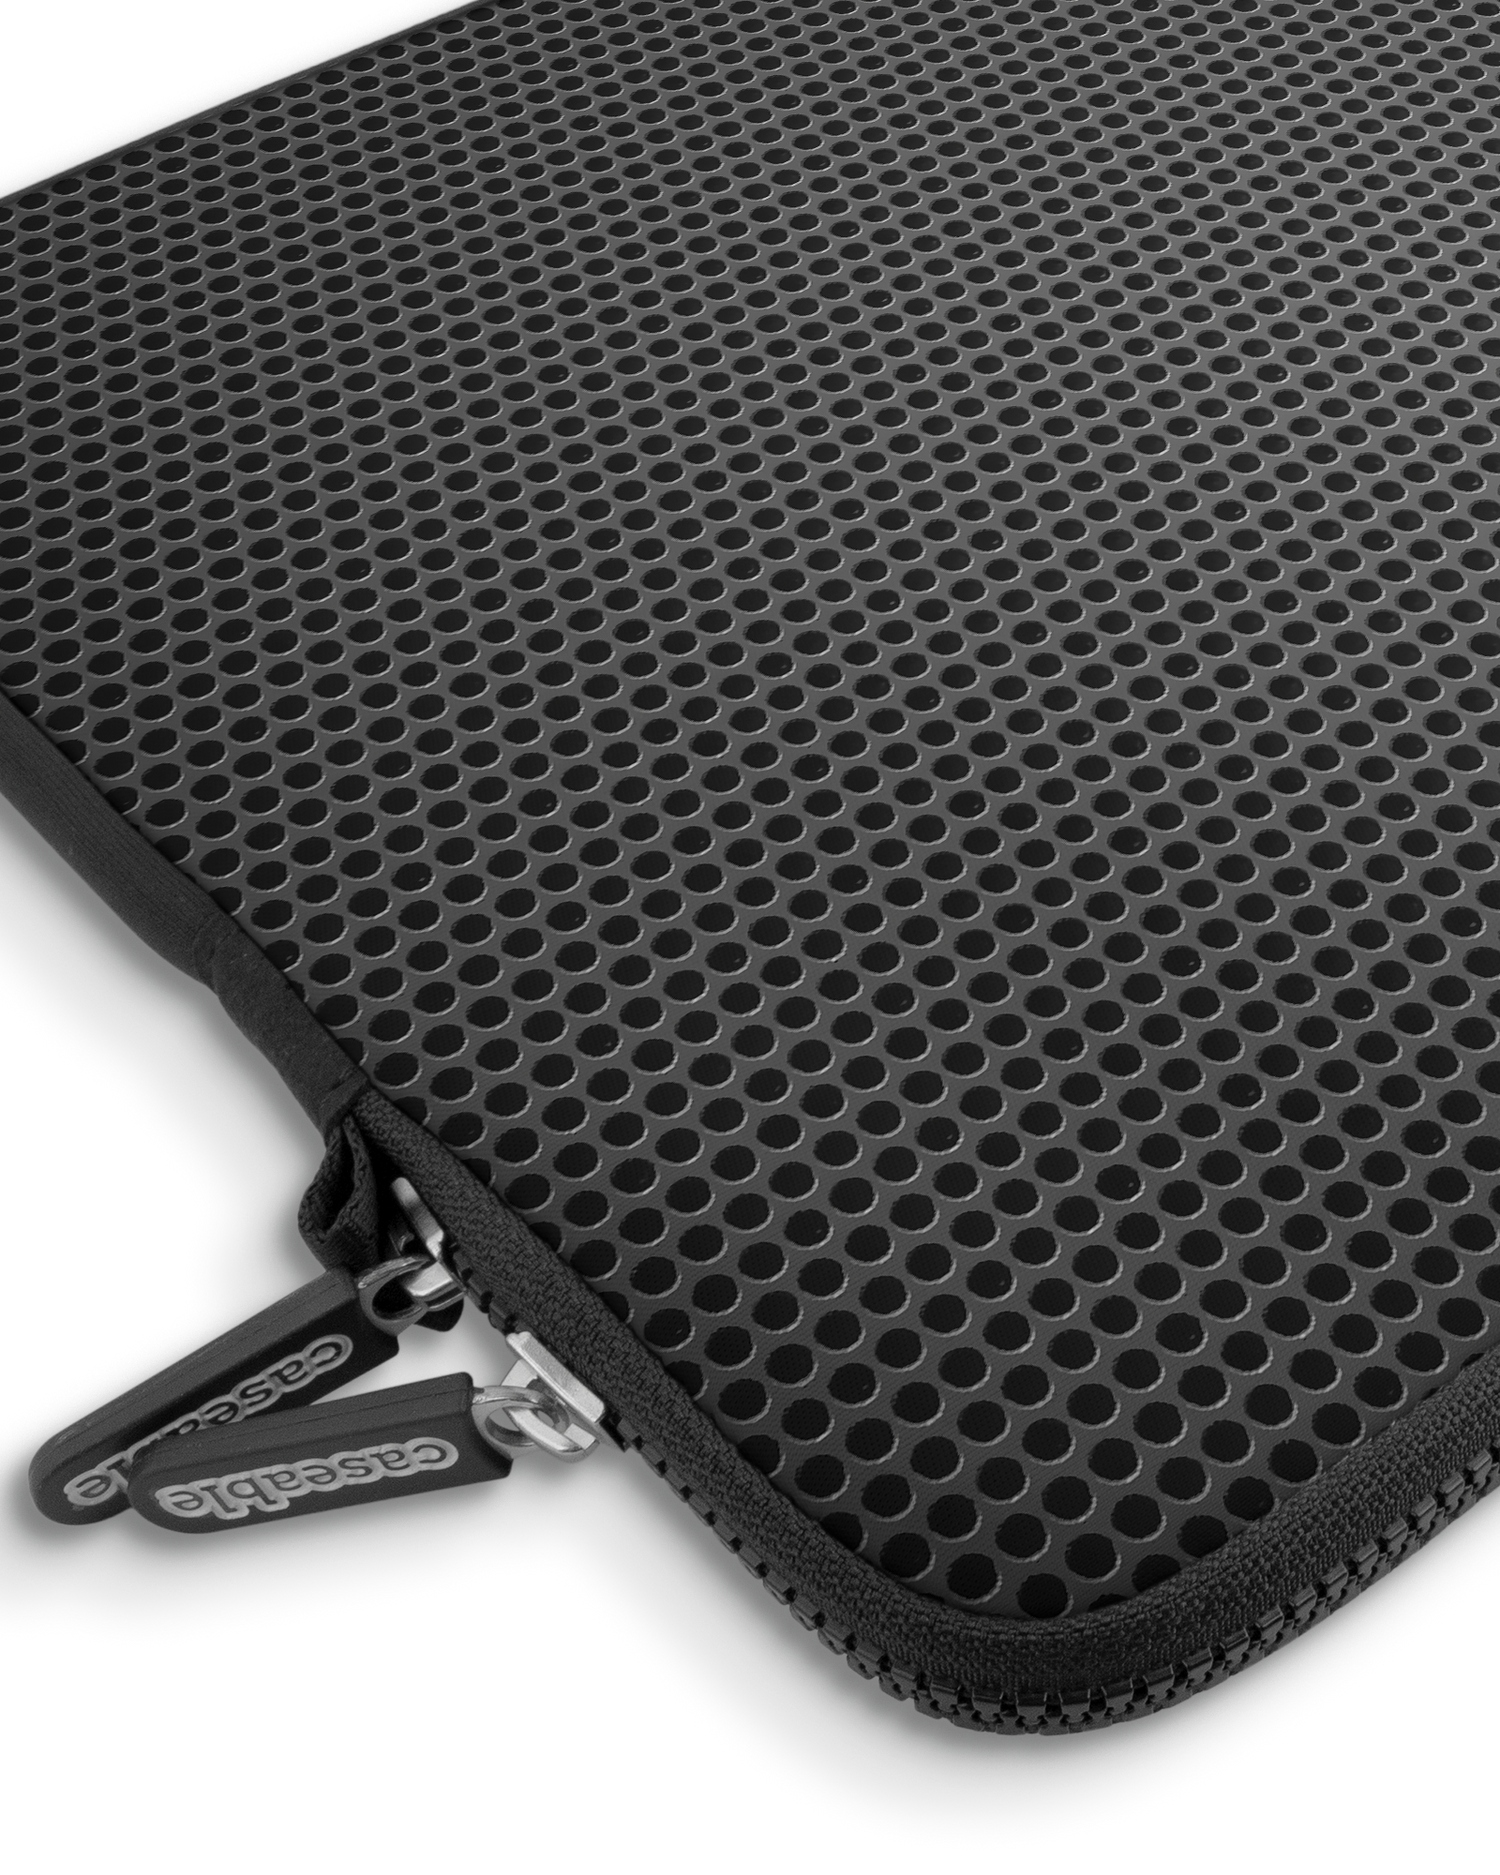 Carbon II Premium Laptoptasche 15 Zoll mit Gerät im Inneren